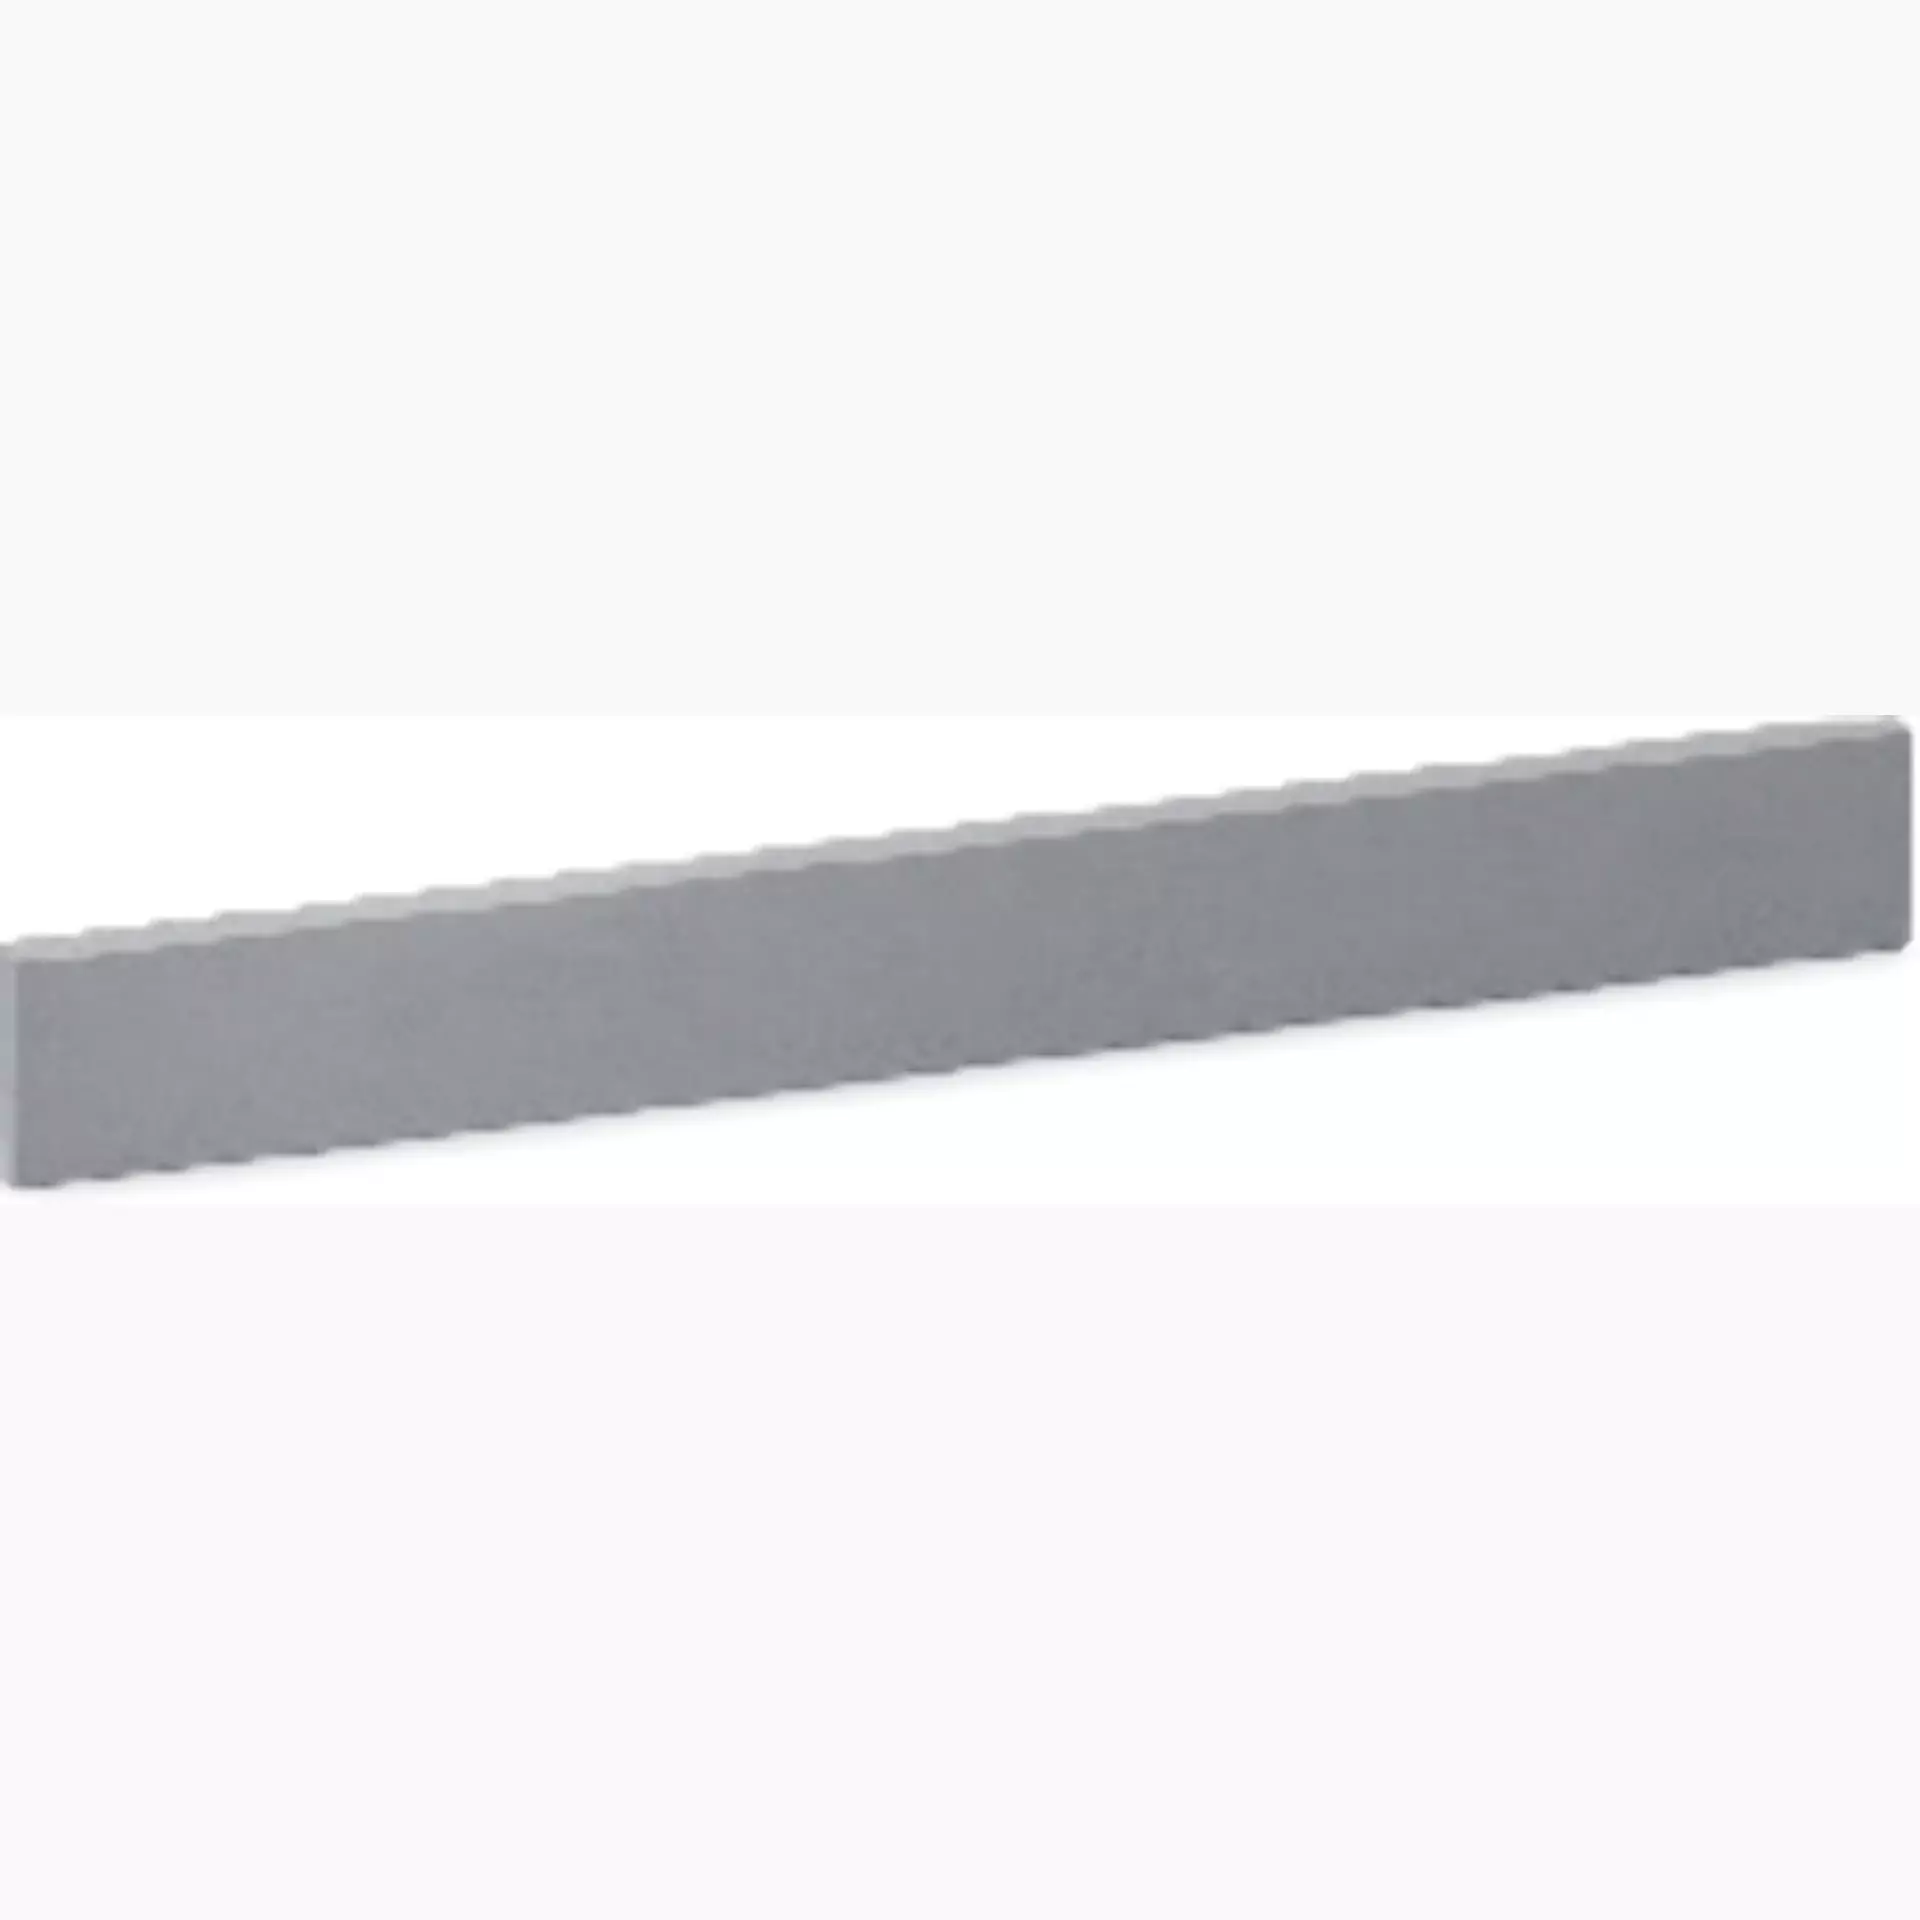 Sichenia Amboise Grigio Soft Grip Skirting board 0192833 7x60cm rectified 10mm